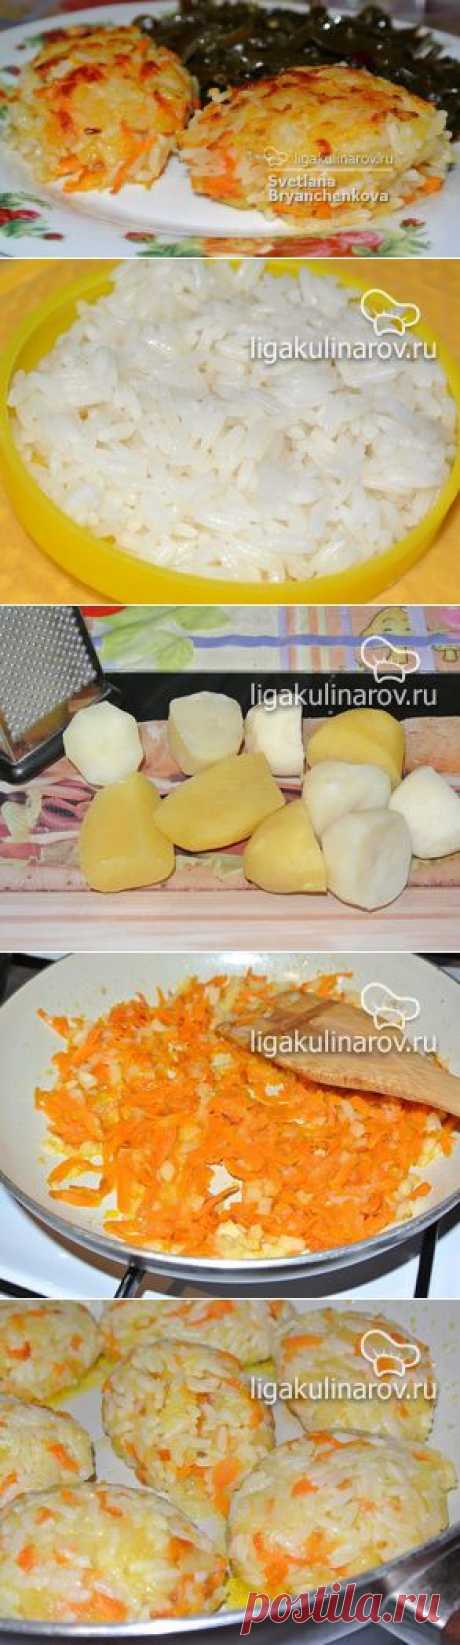 Картофельно-рисовые постные котлеты – рецепт с фото от Лиги Кулинаров, пошаговый рецепт